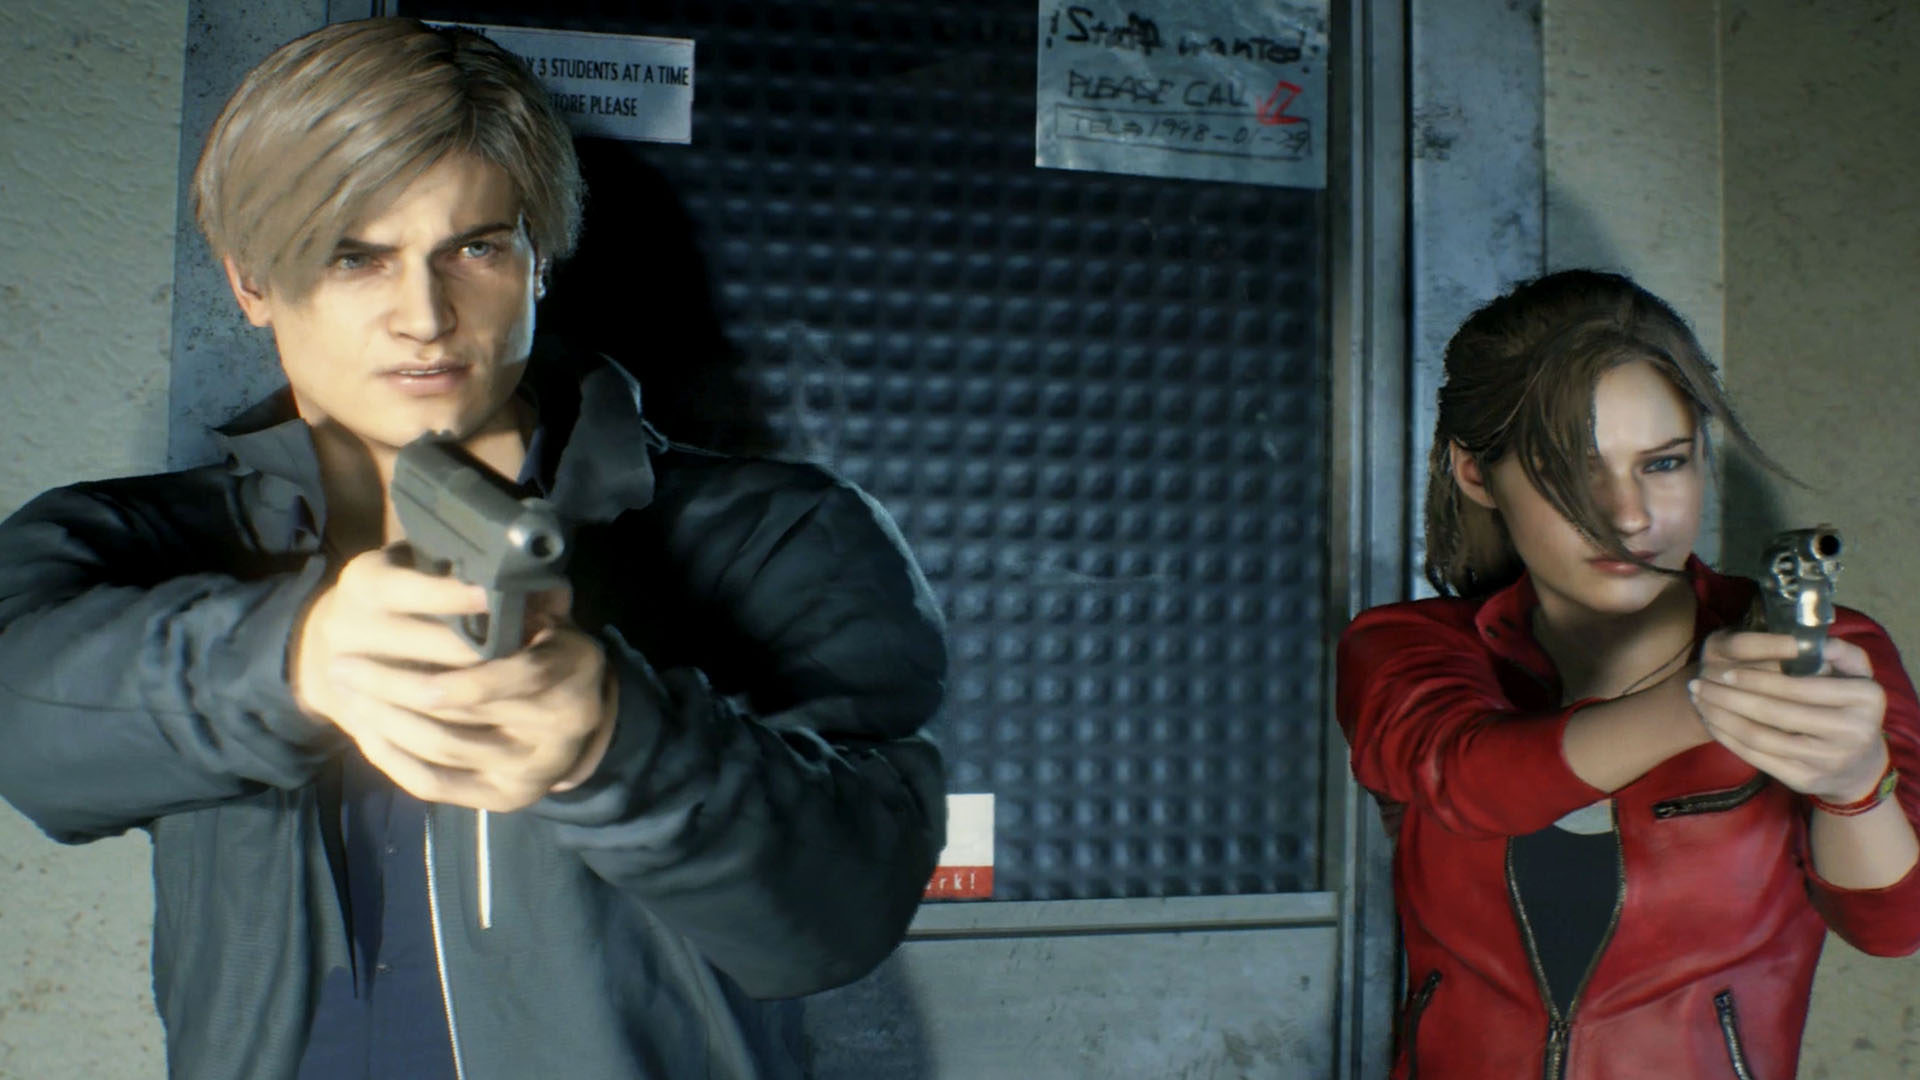 Review: 'Resident Evil 2' remake modernizes horror classic